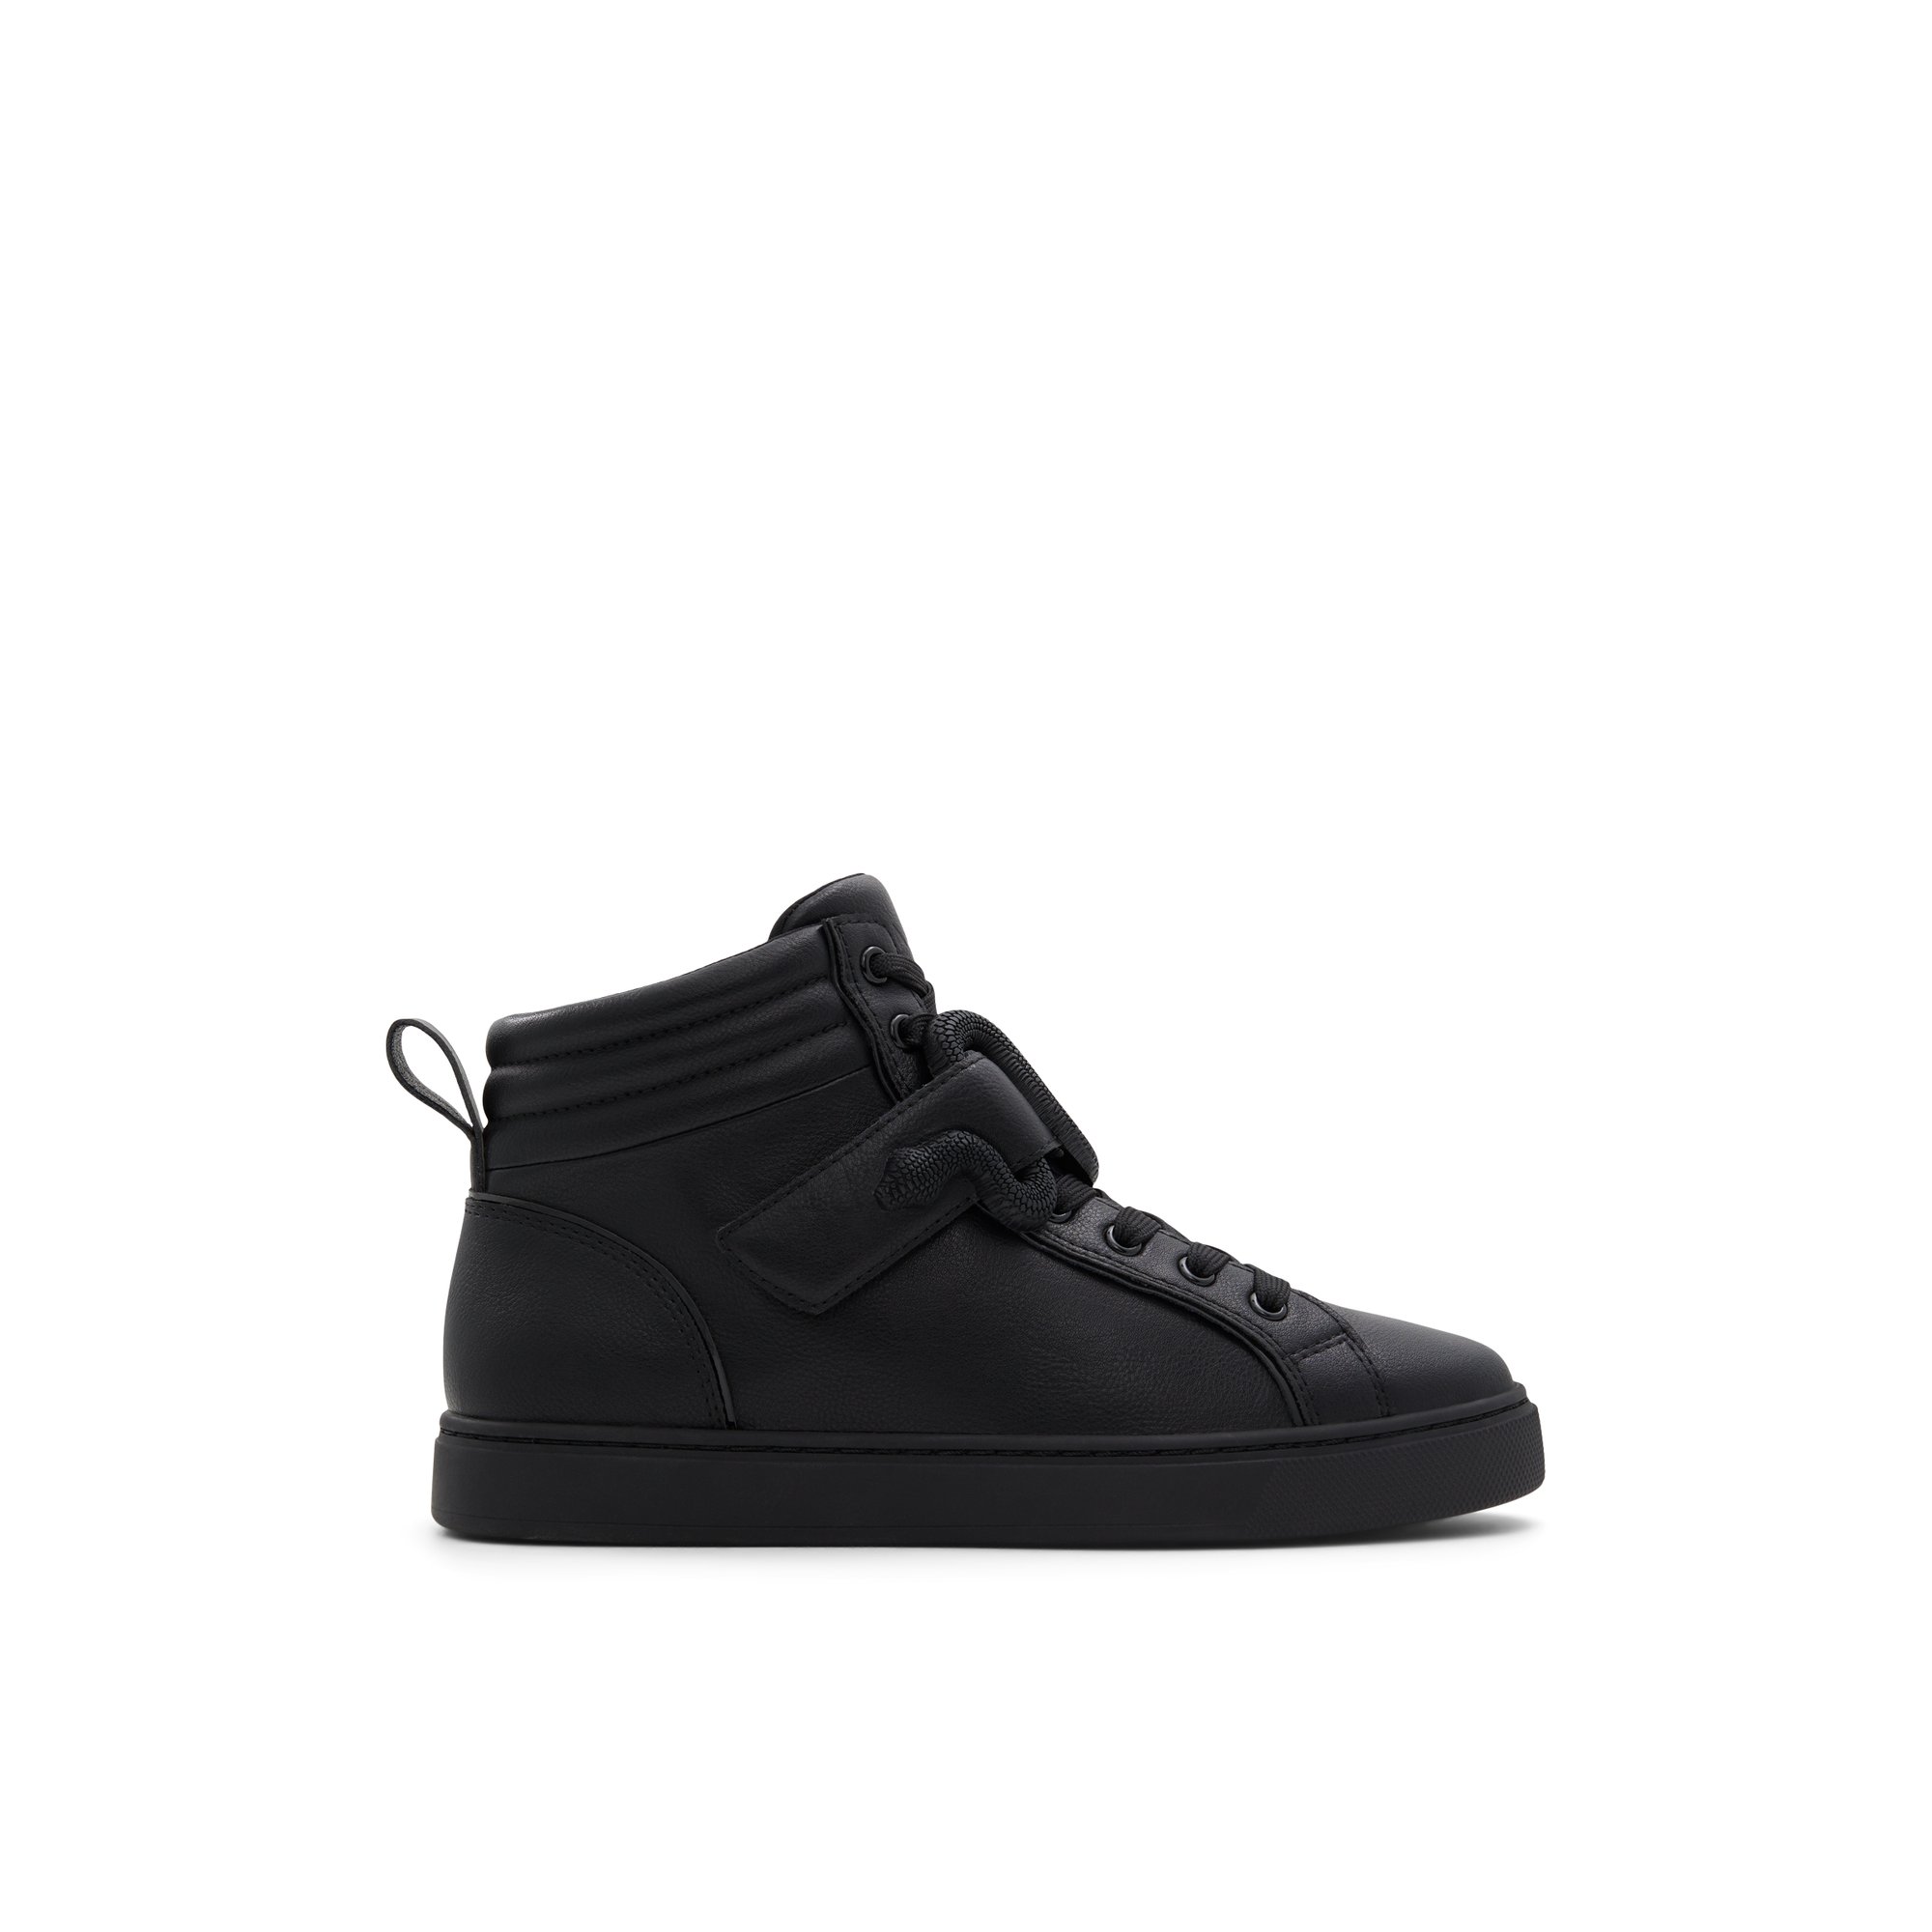 ALDO Dwia - Women's High Top Sneaker Sneakers - Black